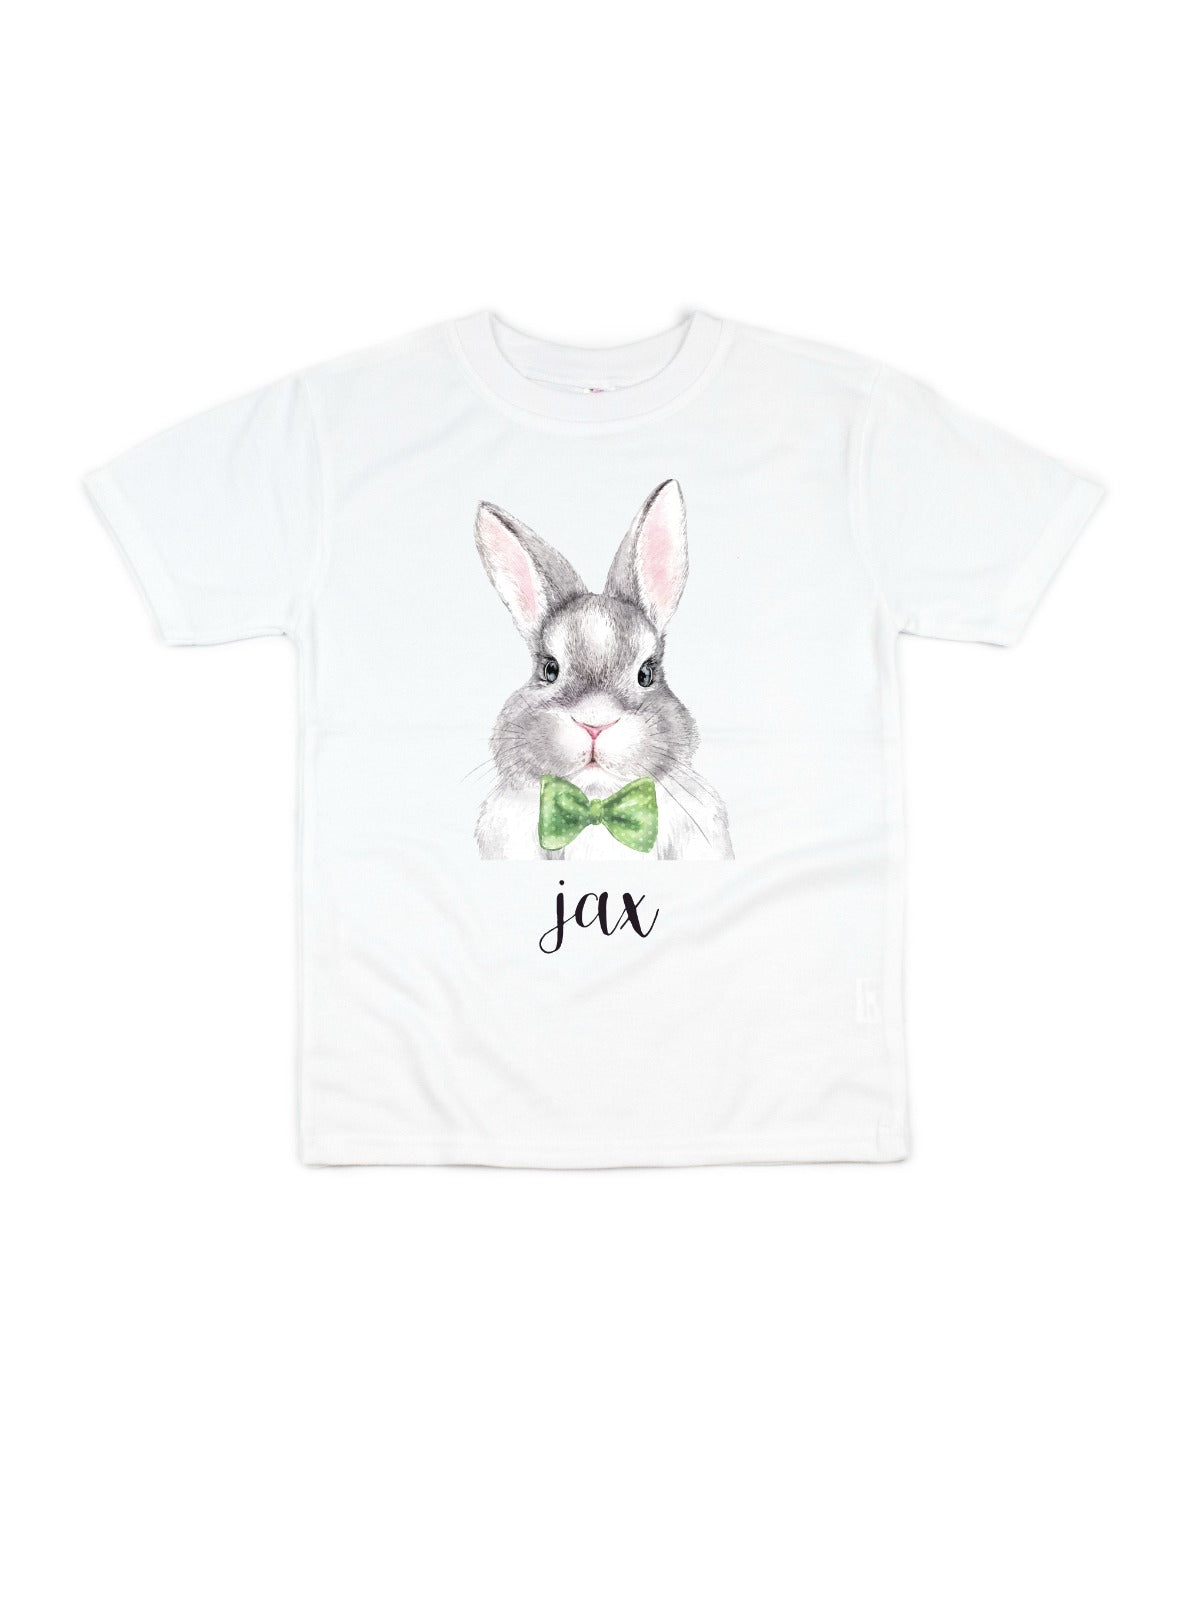 Custom Easter Bunny Shirt for Boys in White